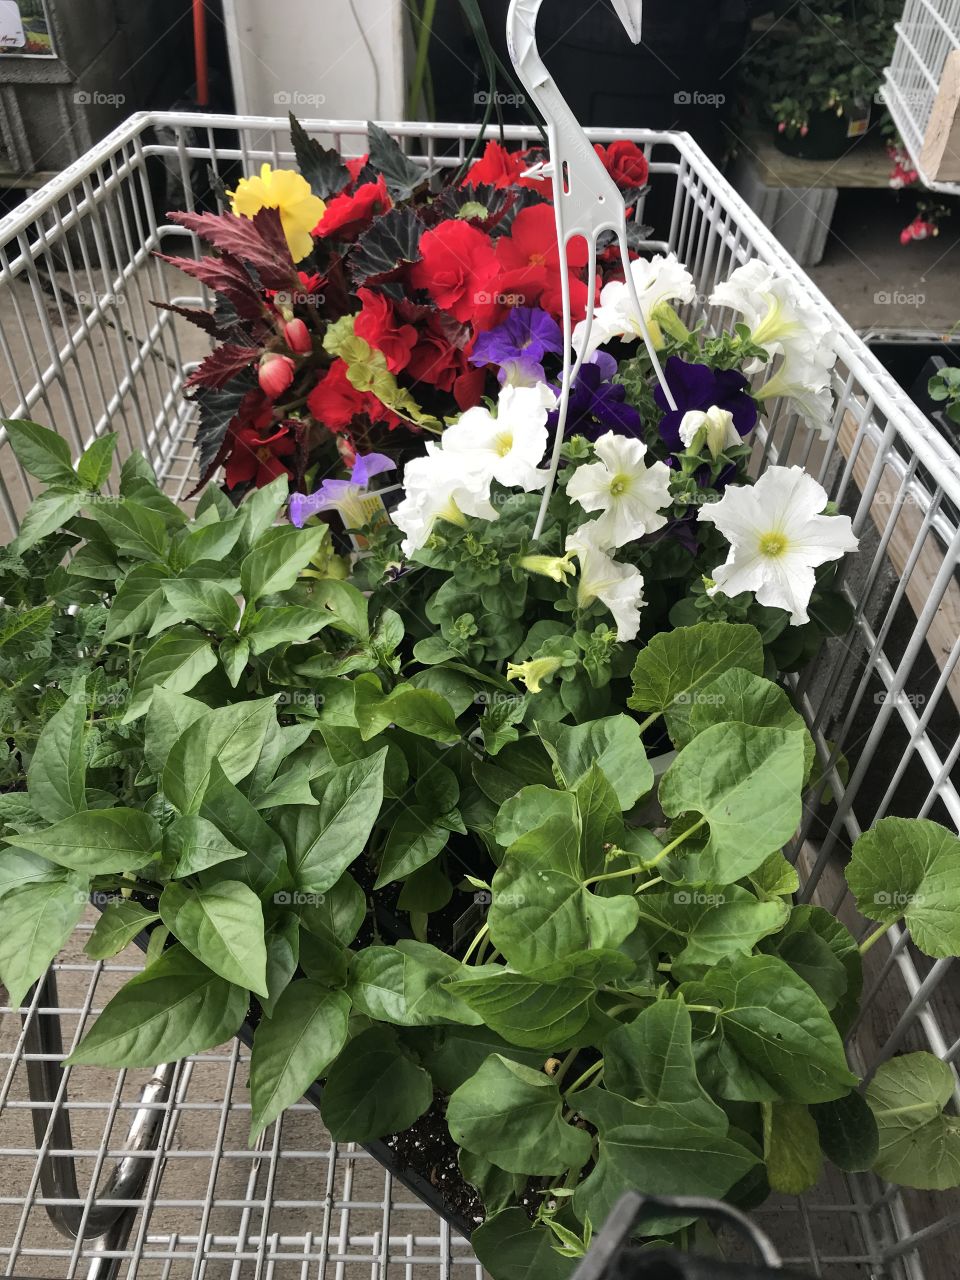 Plant shopping cart full of flowers 